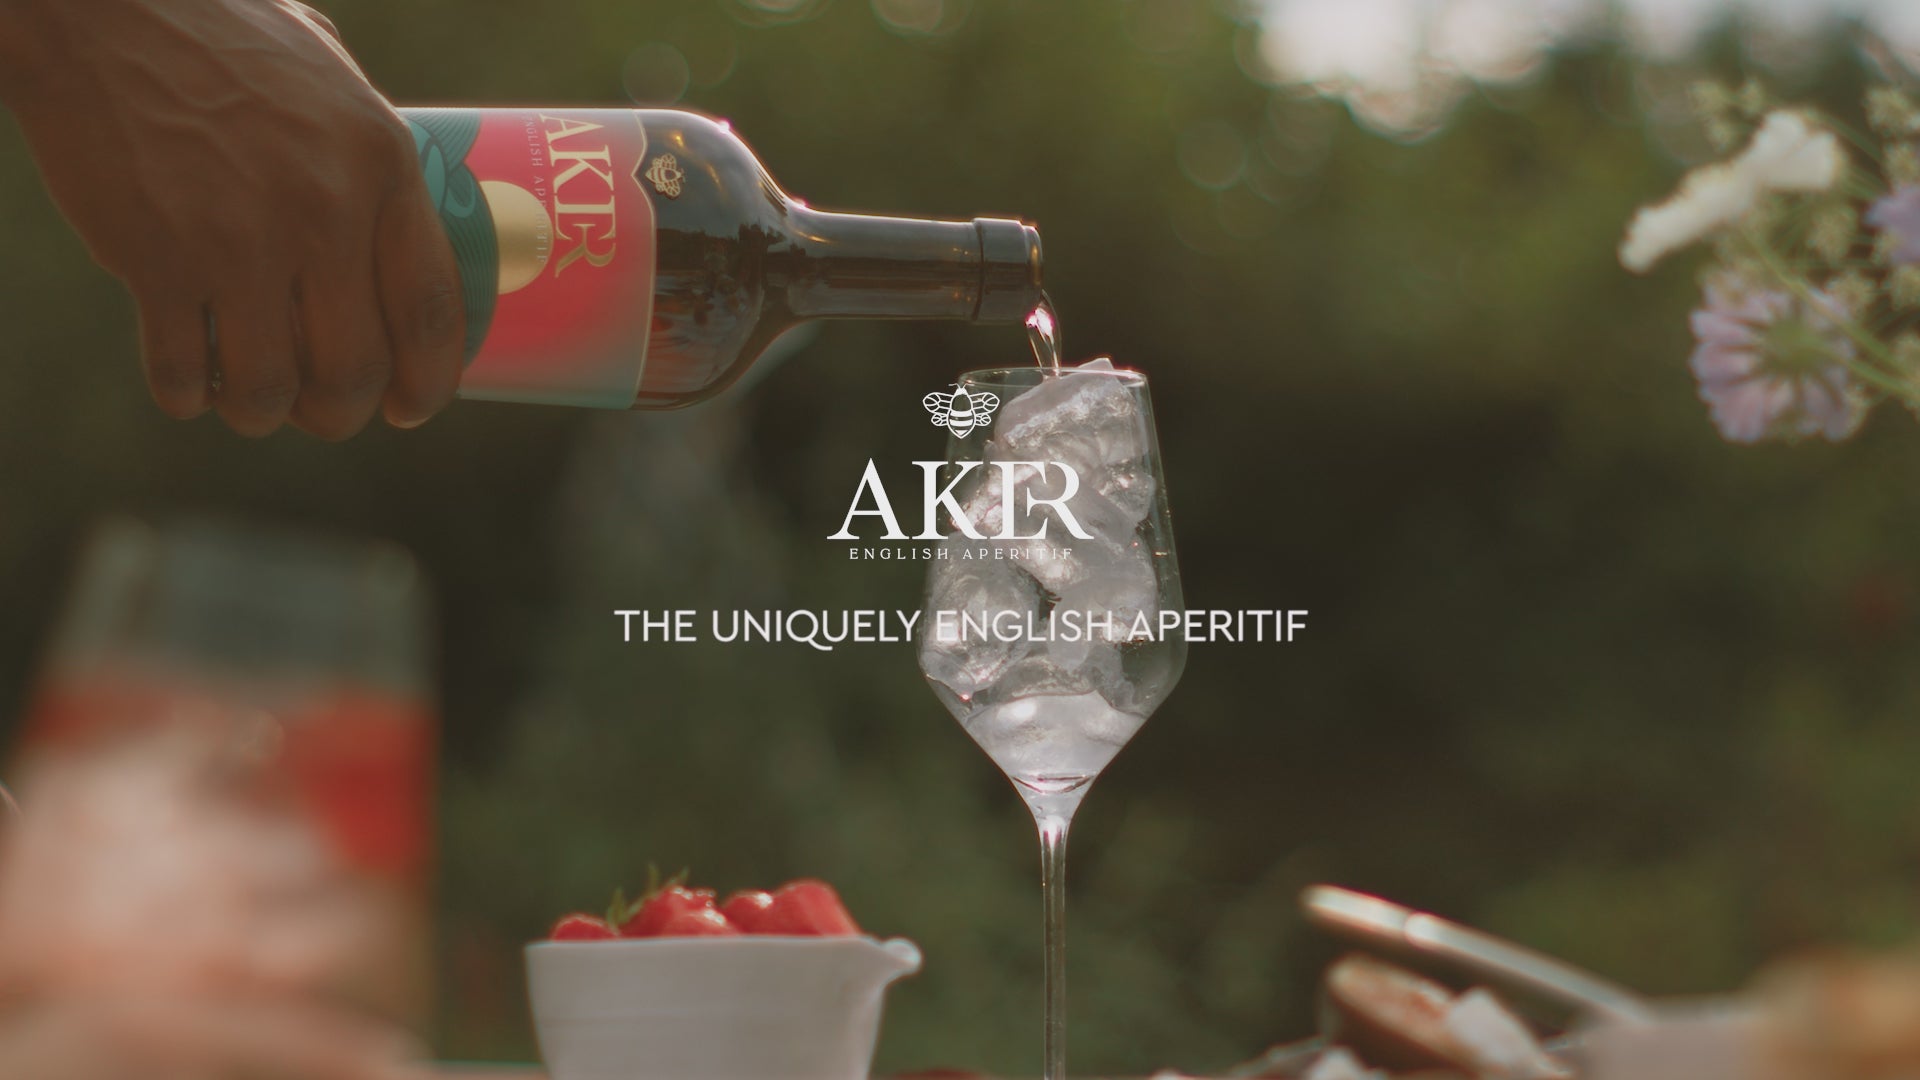 The AKER Spritz Kit